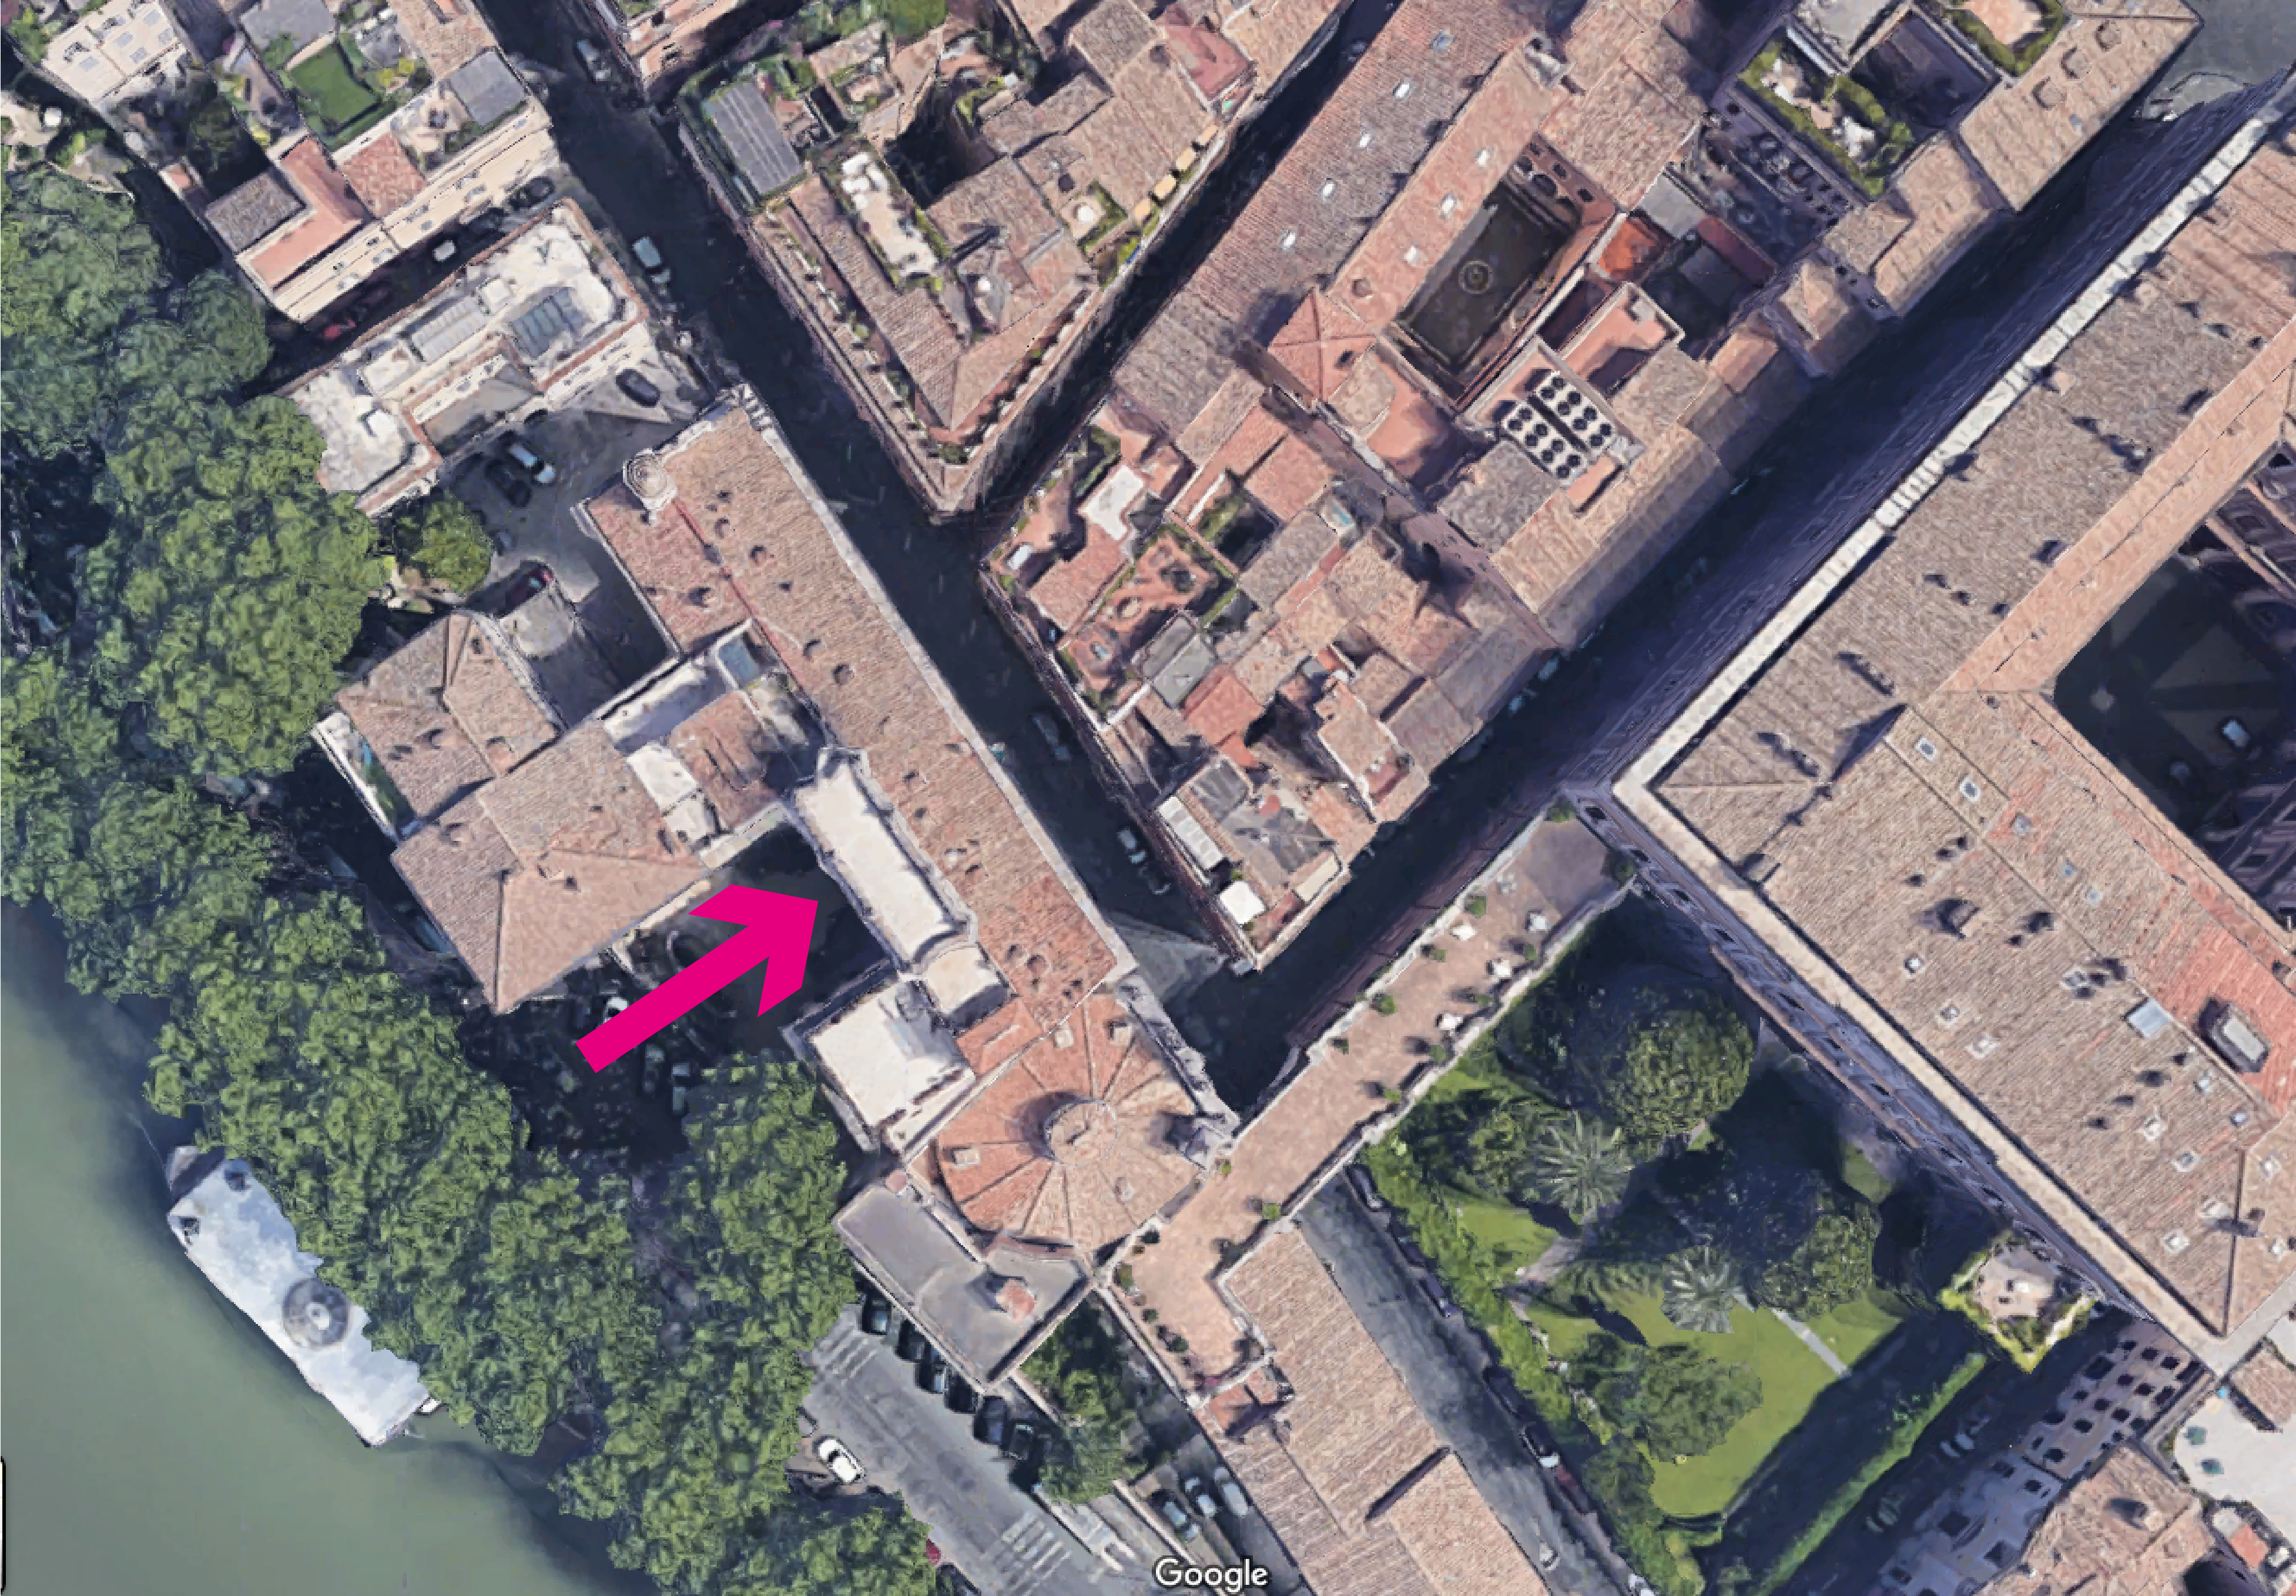 La flecha señala la altana del Palacio Falconieri en Vía Giulia (la Via Giulia se desarrolla en paralelo al Tíber)